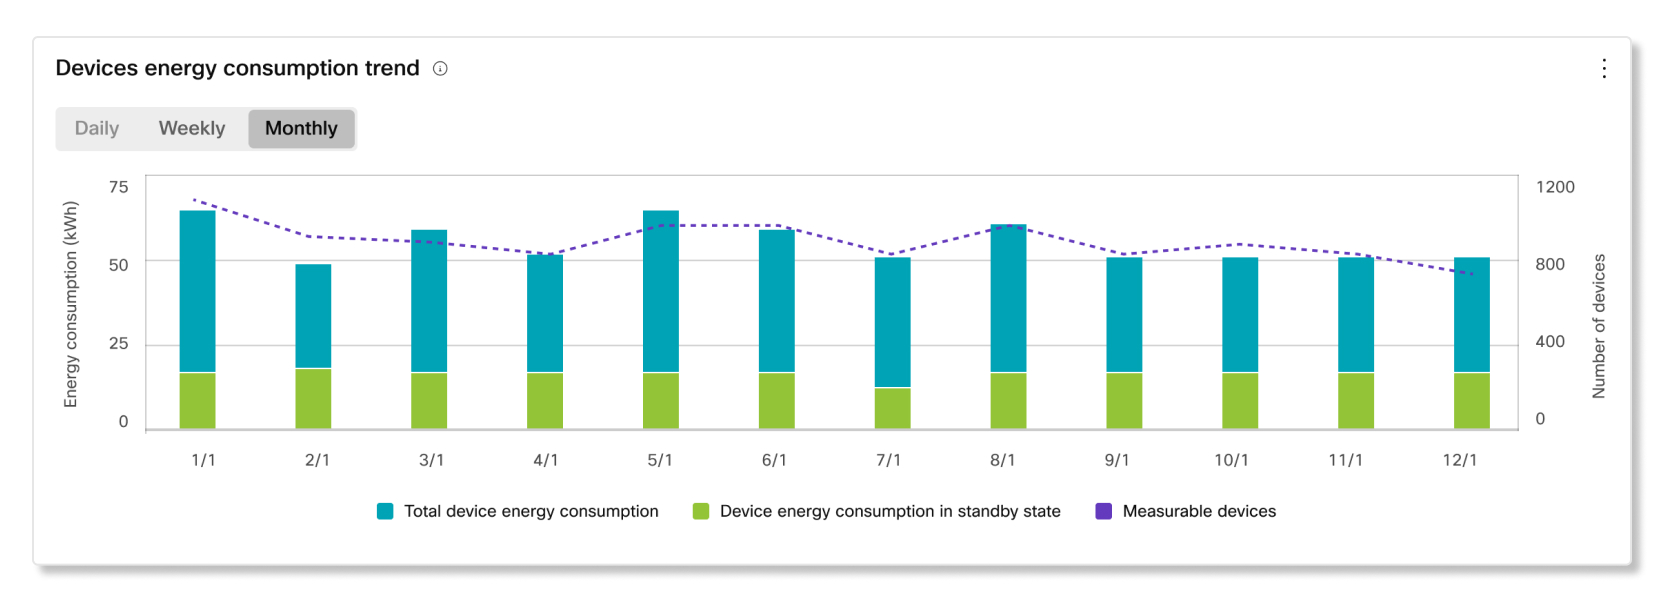 Tendencia del consumo energético de los dispositivos en análisis de sostenibilidad